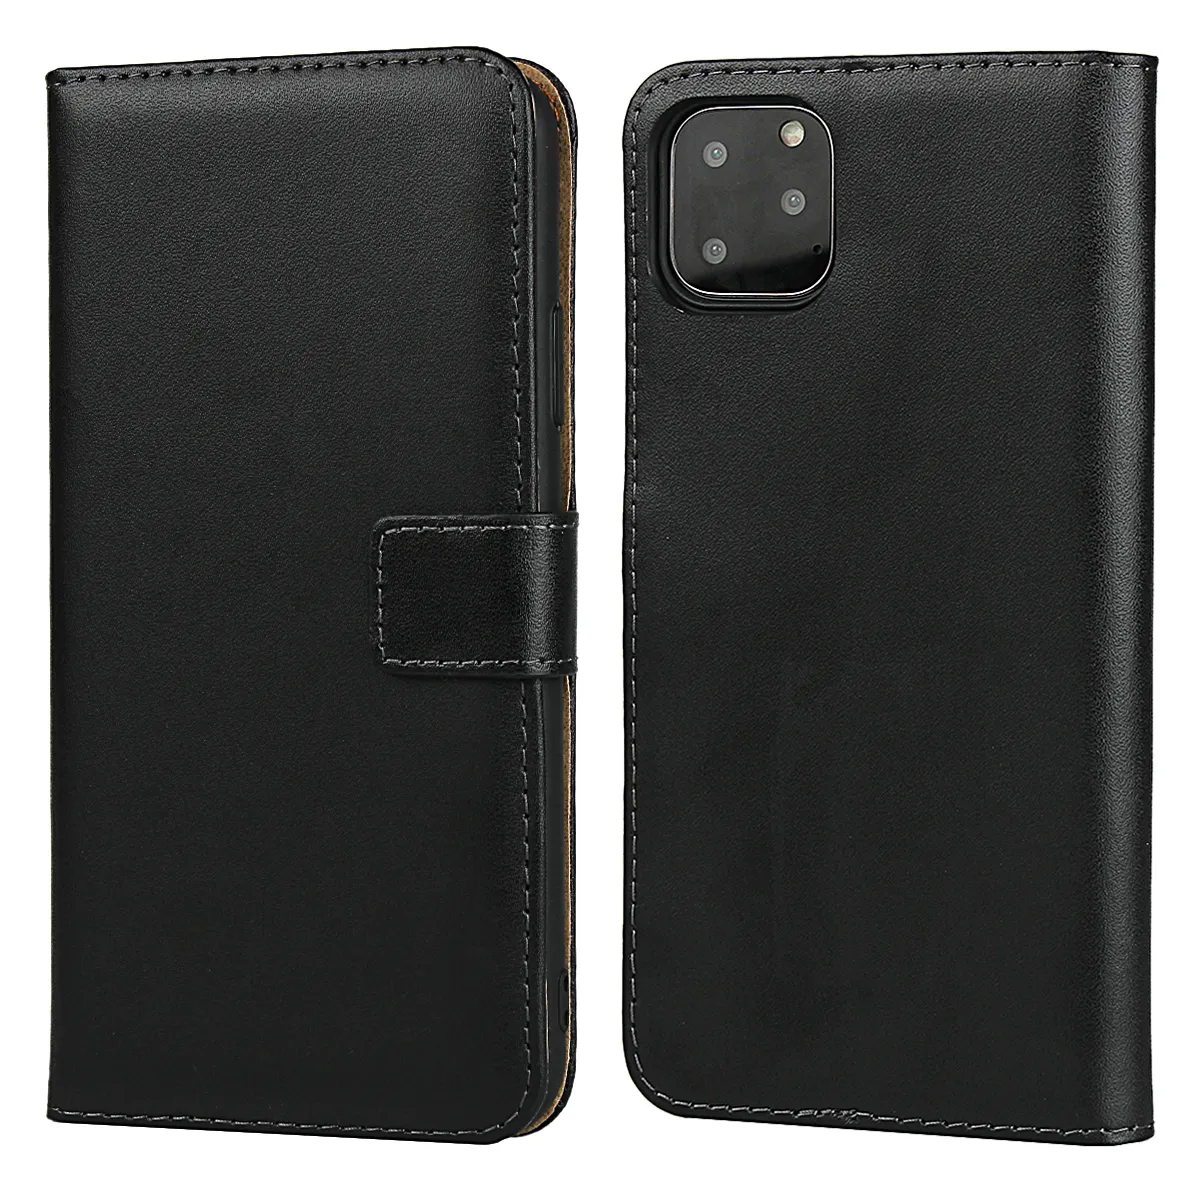 IPhone 11 için Pro sıcak satış gerçek hakiki deri cüzdan kılıf kapak Flip cep telefonu çantası ile Kickstand ve kart tutucu